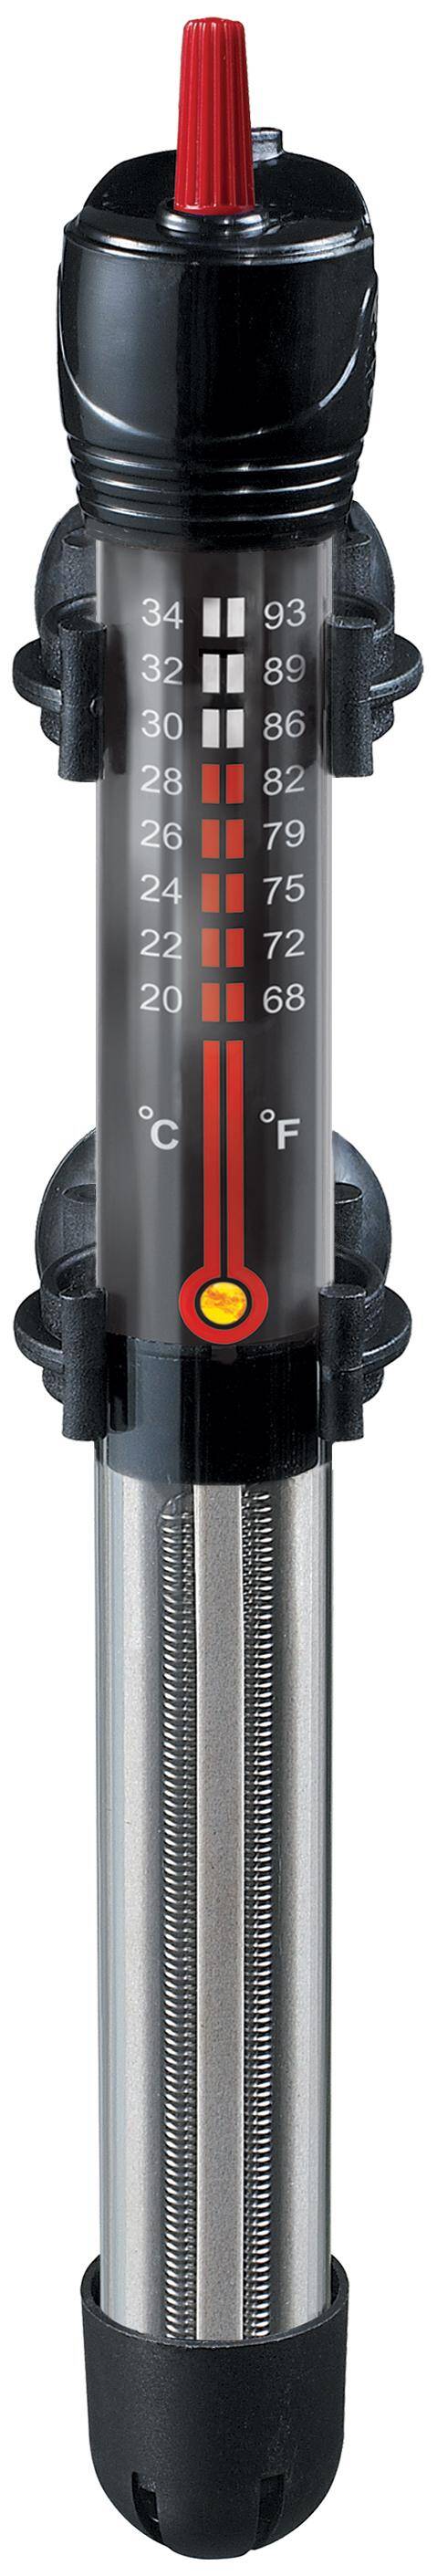 AquaT 50W Heizgerät mit Thermostat Happet (S-G050XI)